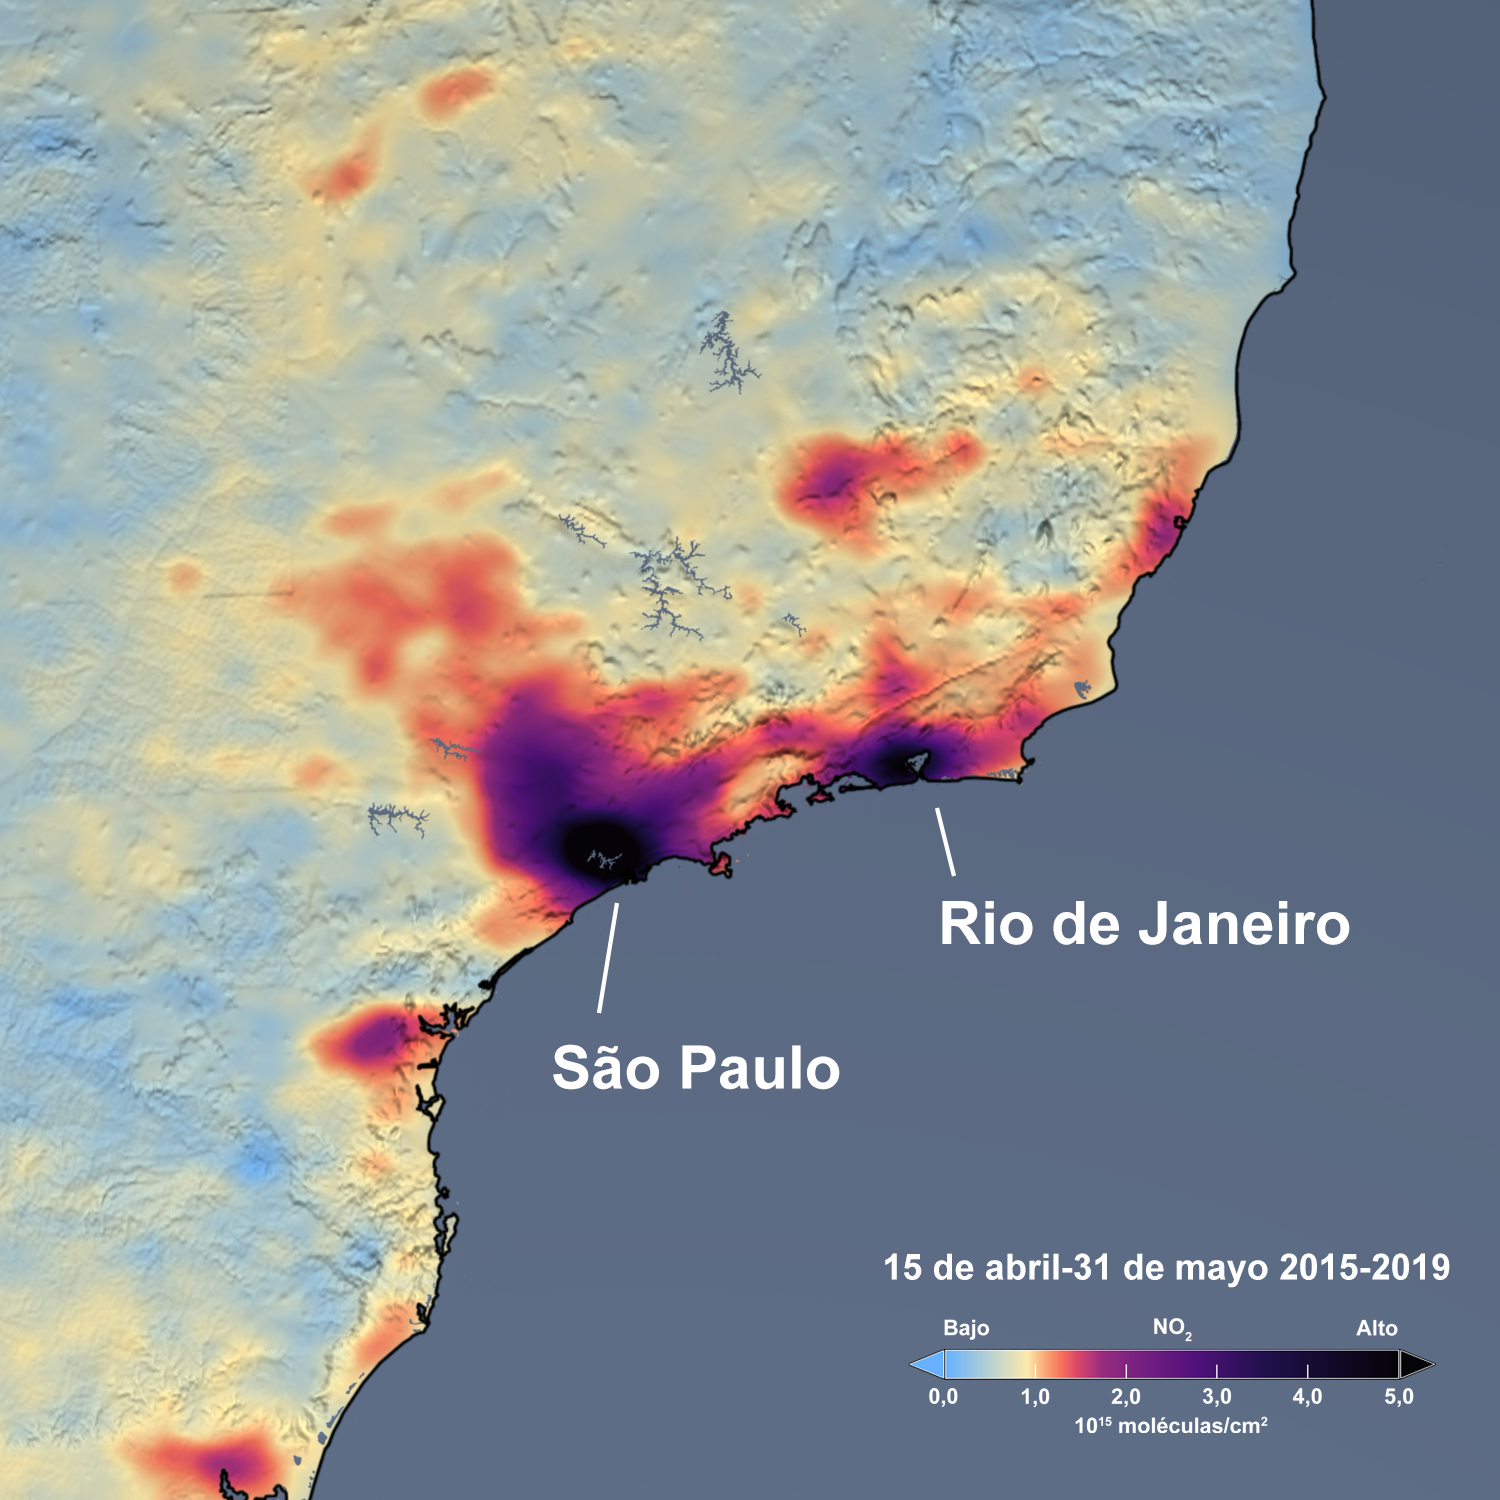 NO2, Rio de Janeiro and São Paulo, April 15-May 31 2015-2019, Spanish